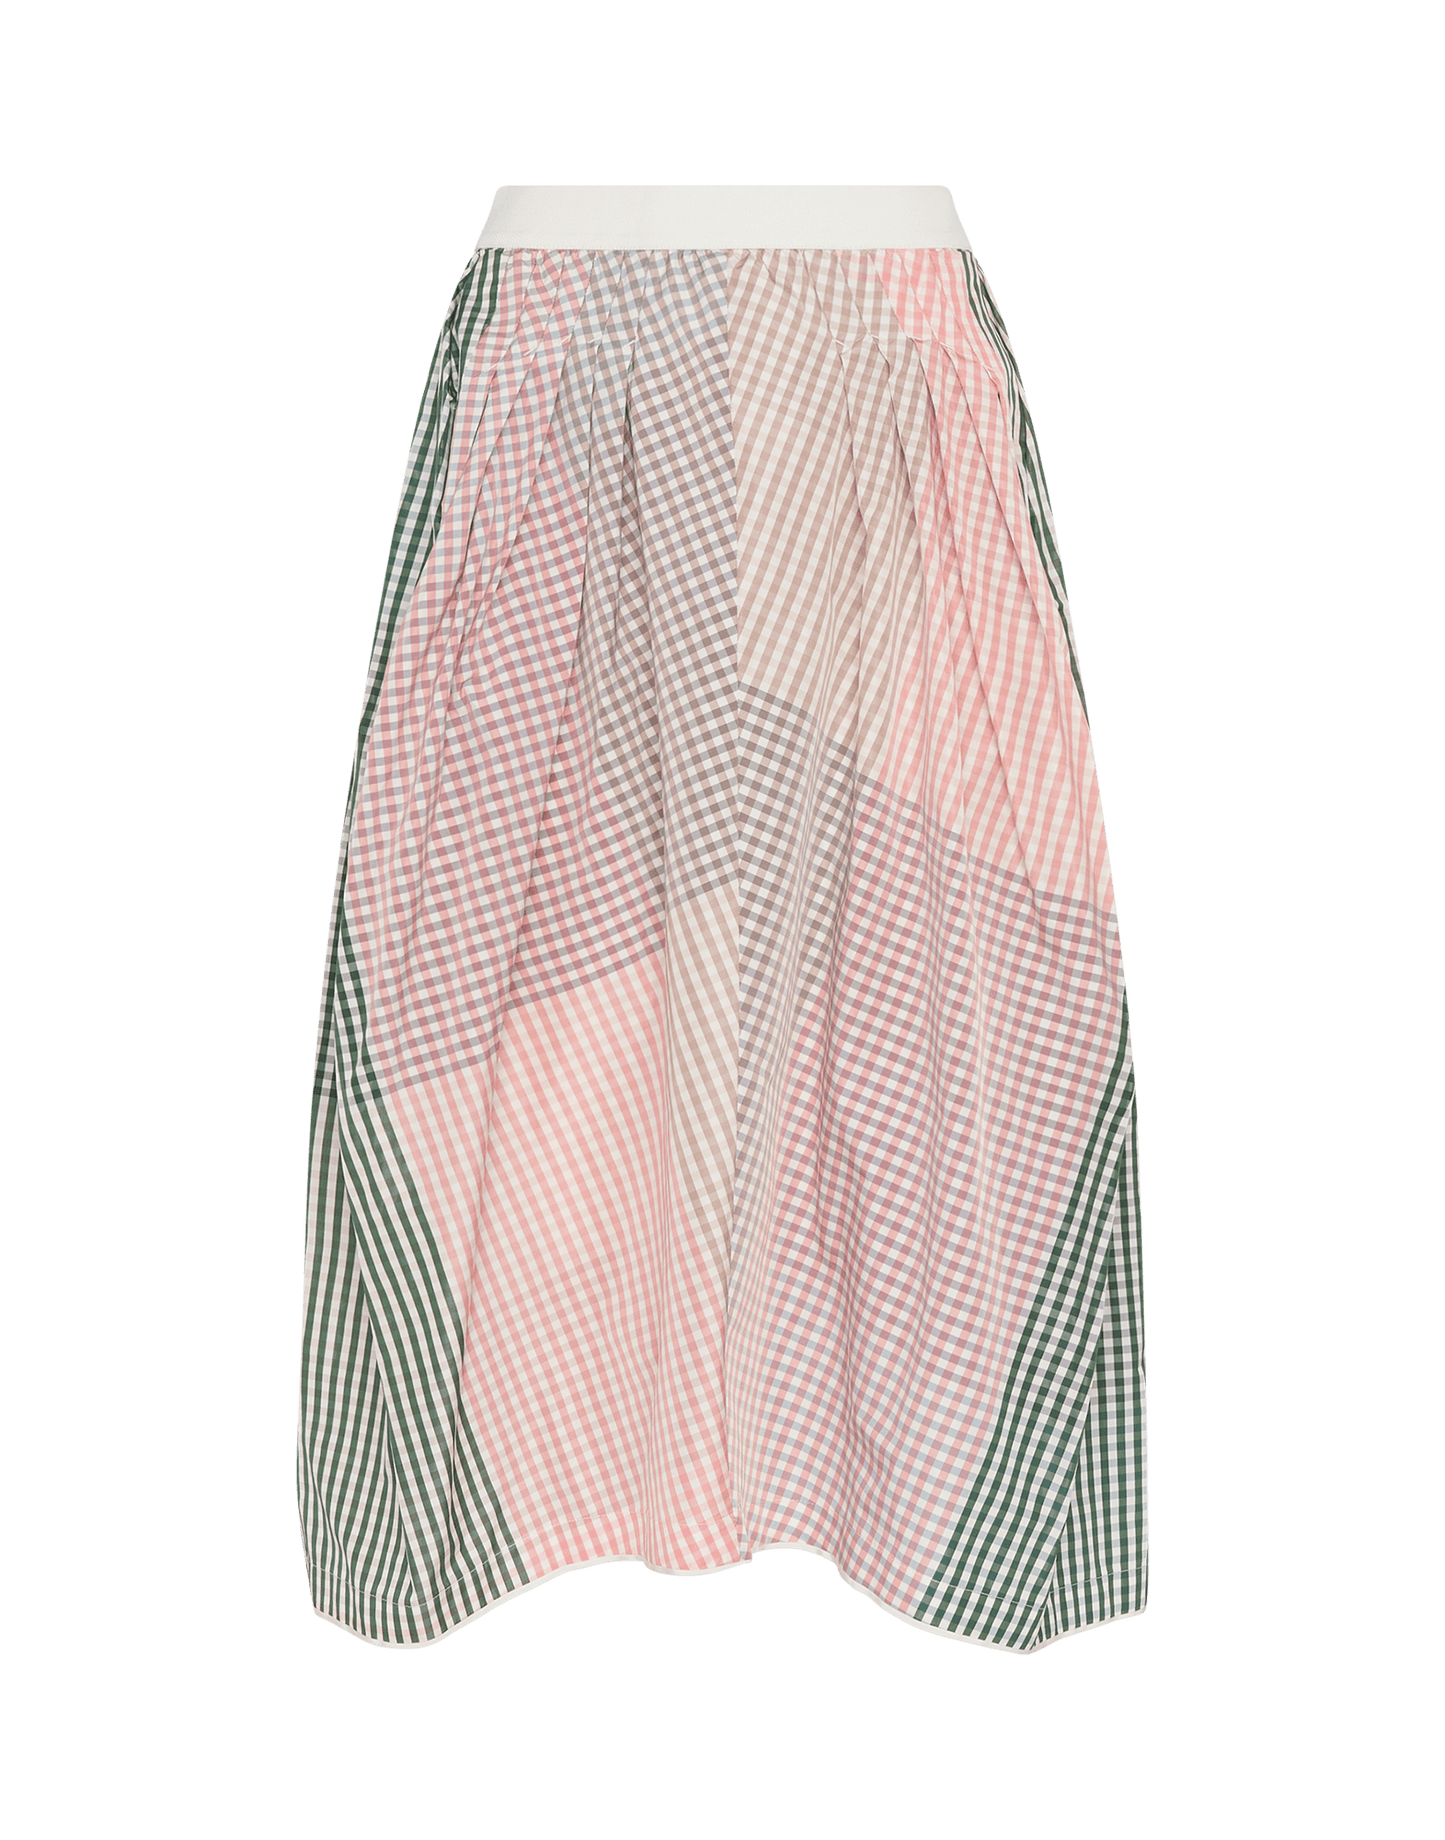 Festoon Bell Shaped Skirt